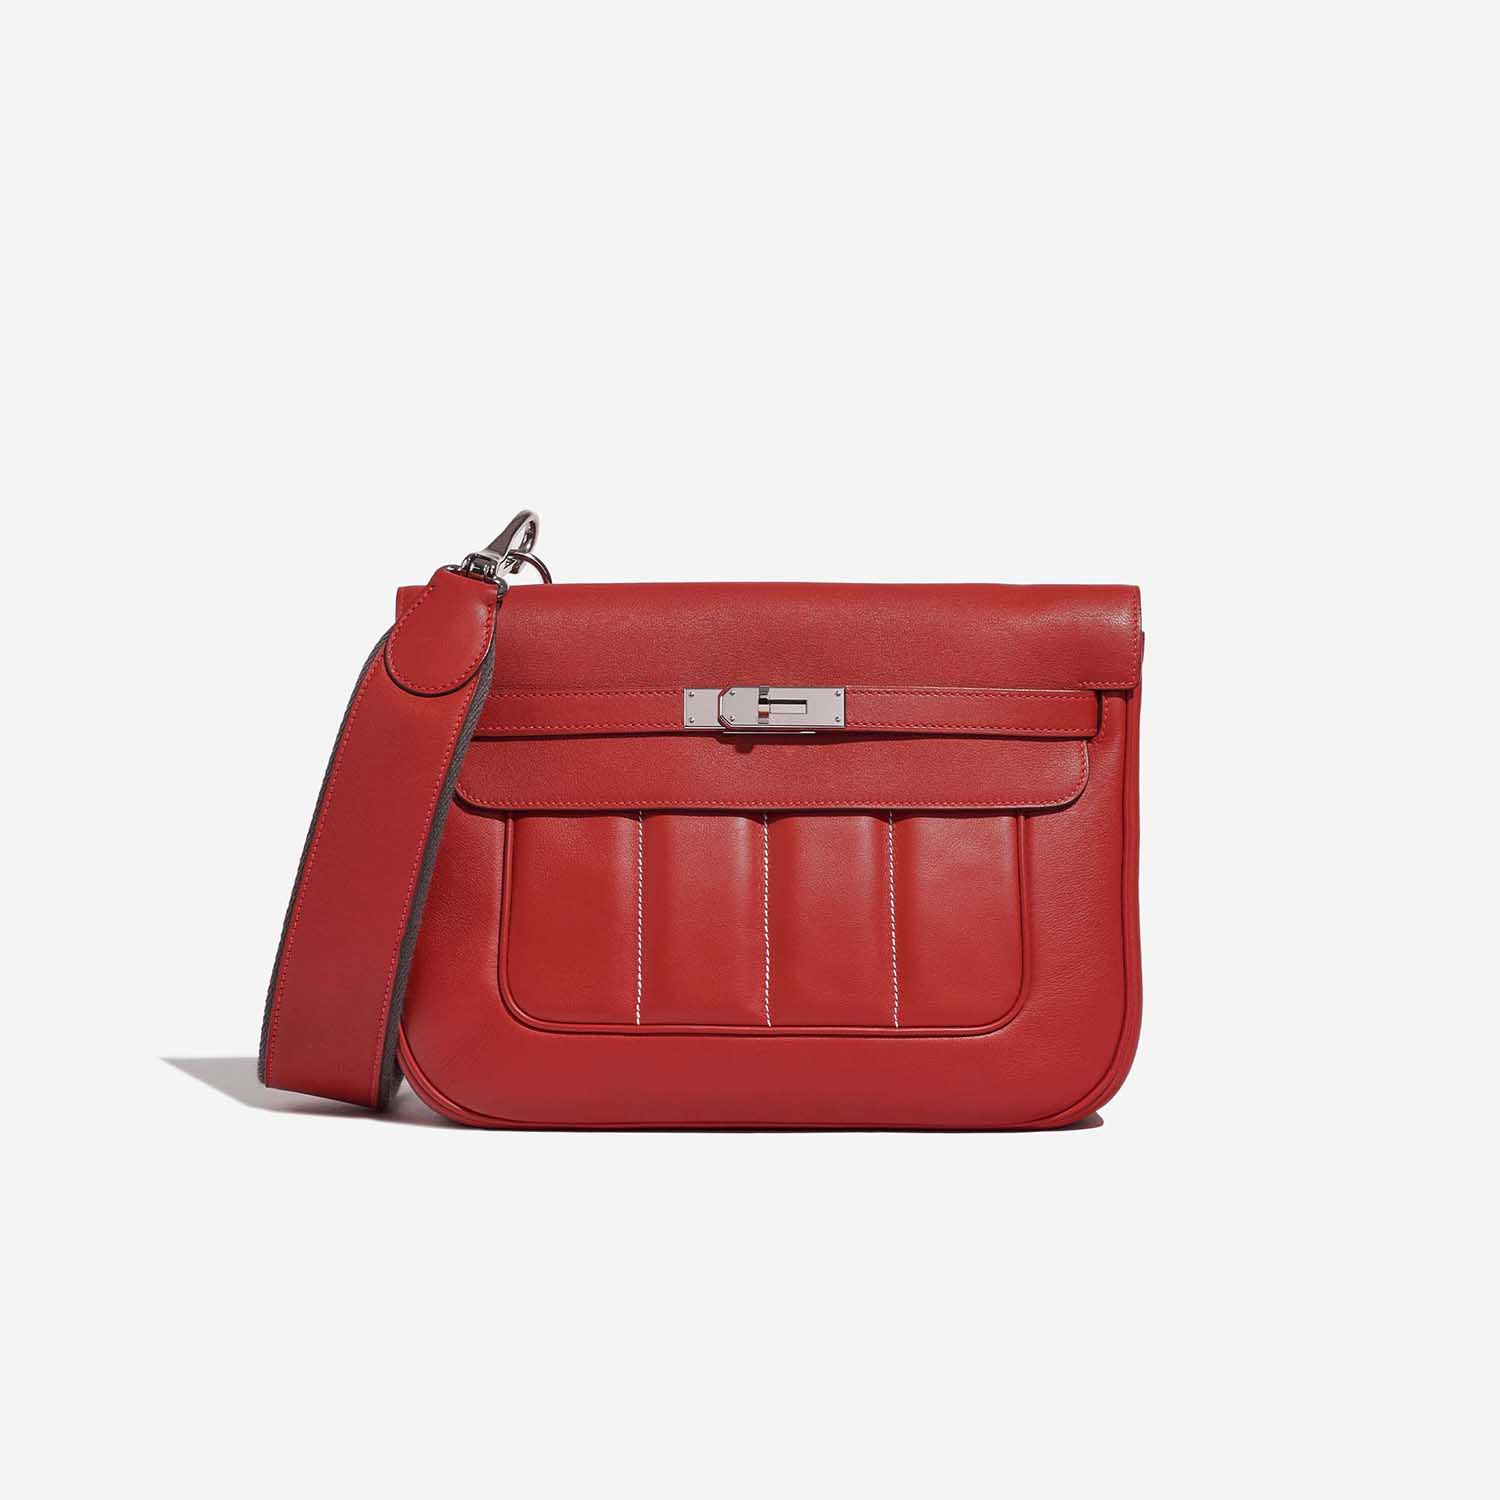 Sell Hermès Berline 28 Bag - Red